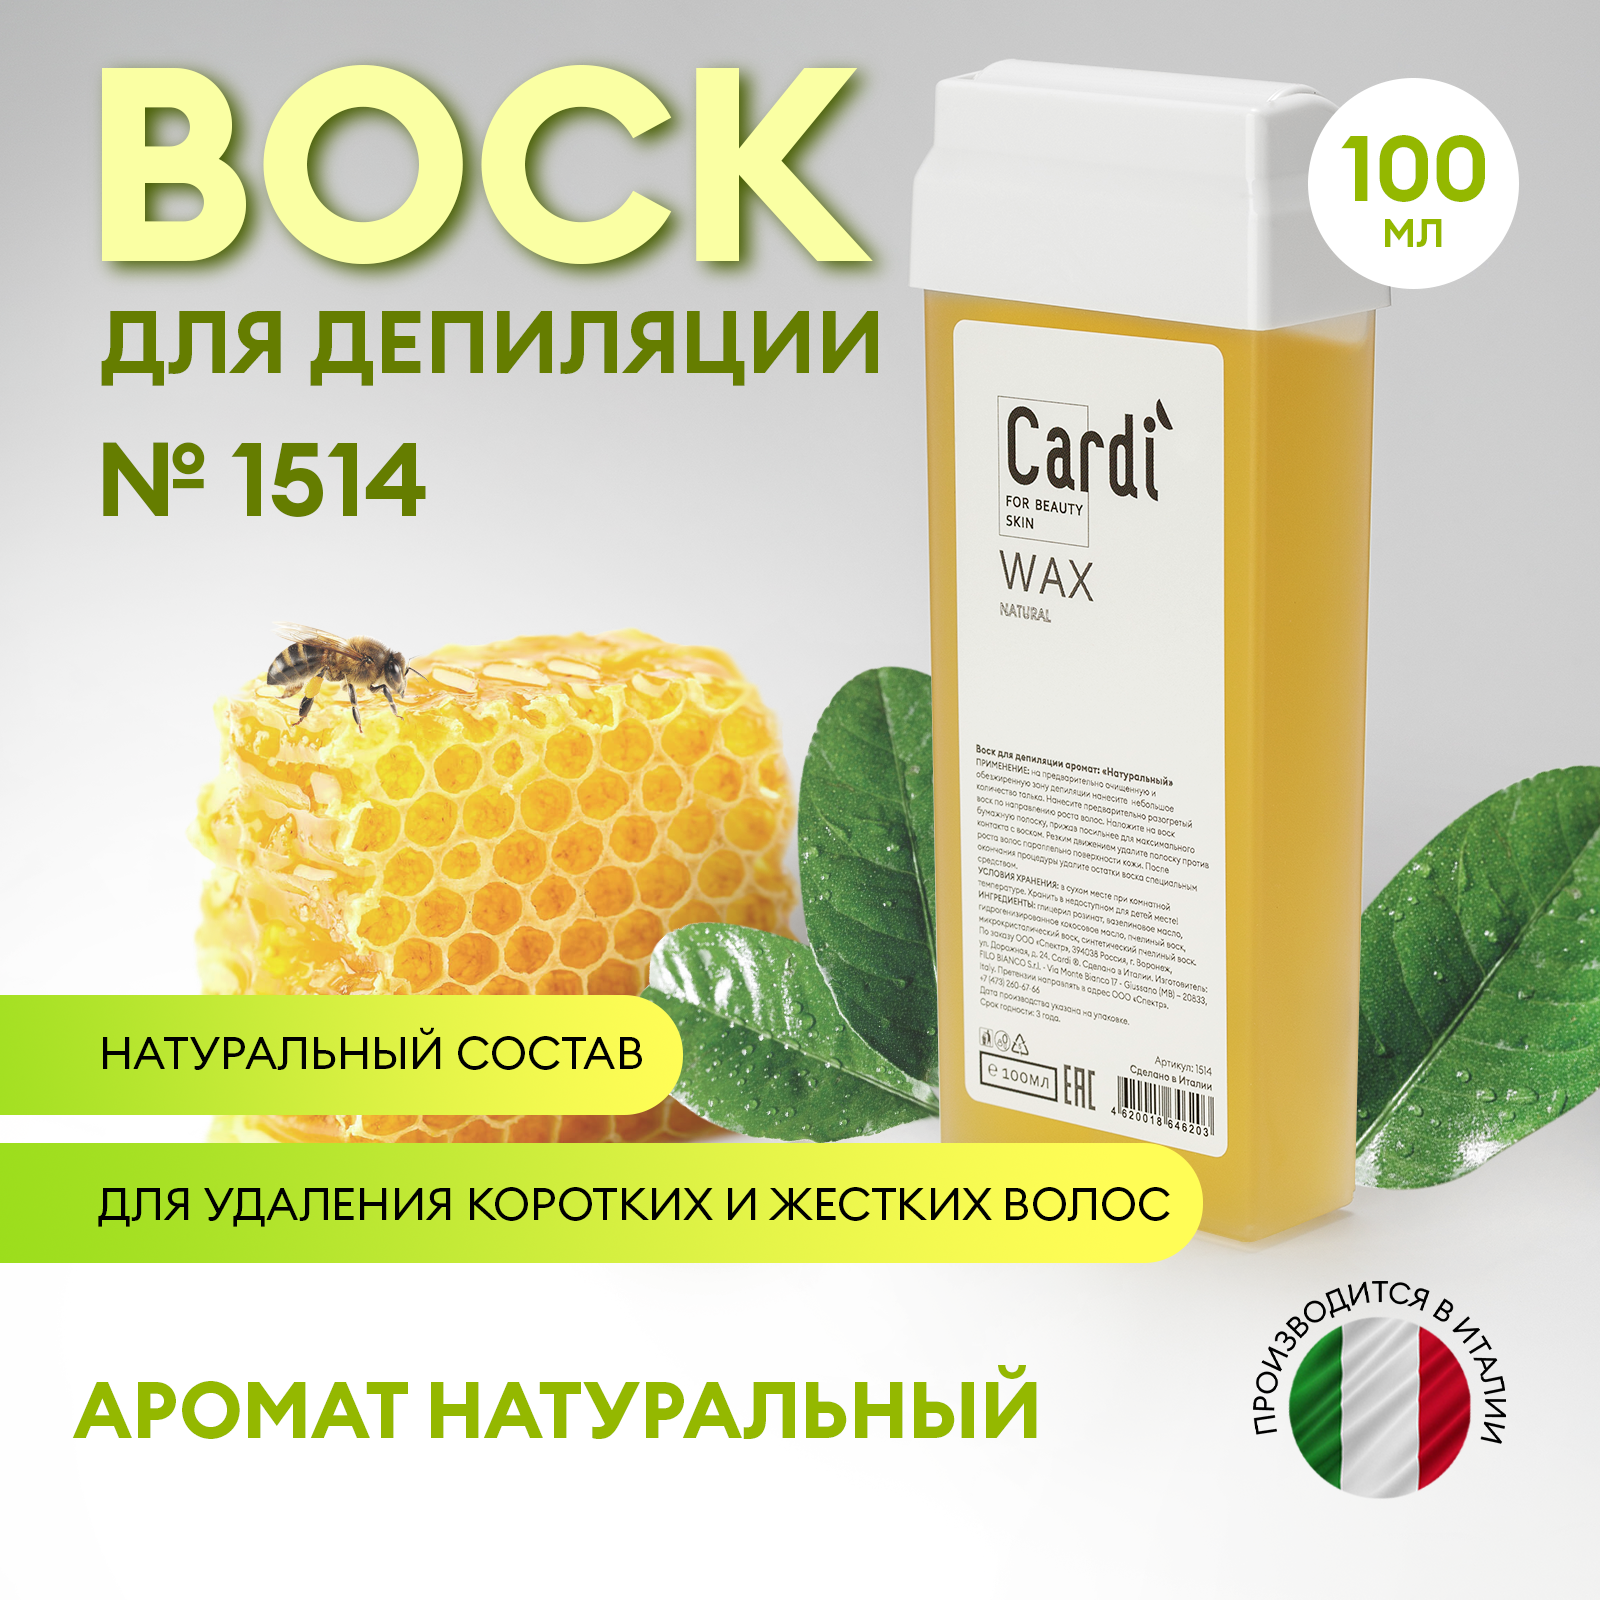 Воск для депиляции Cardi (аромат: Натуральный), 100 мл